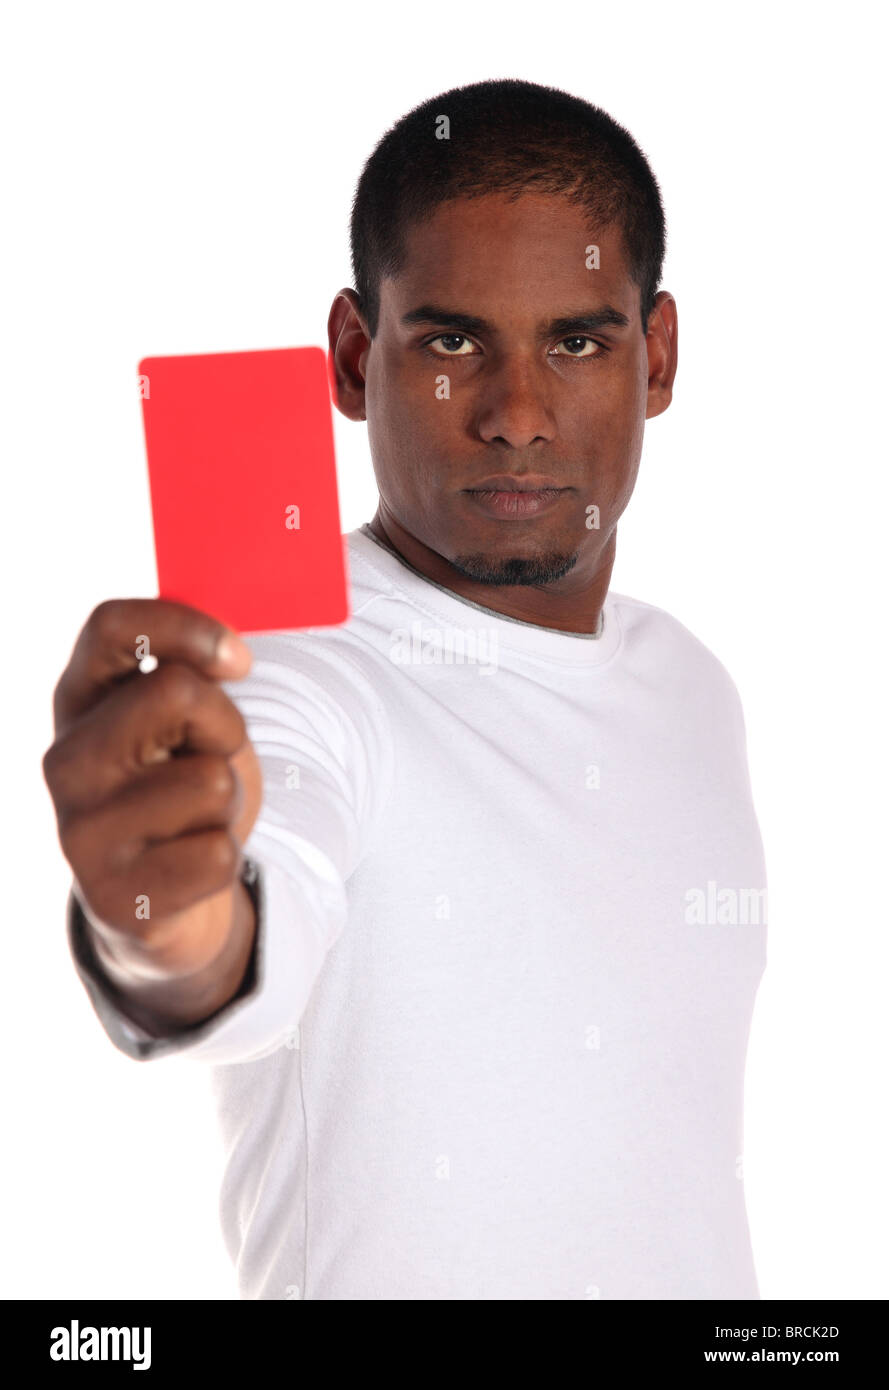 Eine attraktive dunkelhäutigen Mann zeigt eine rote Karte. Alle auf weißem Hintergrund. Stockfoto